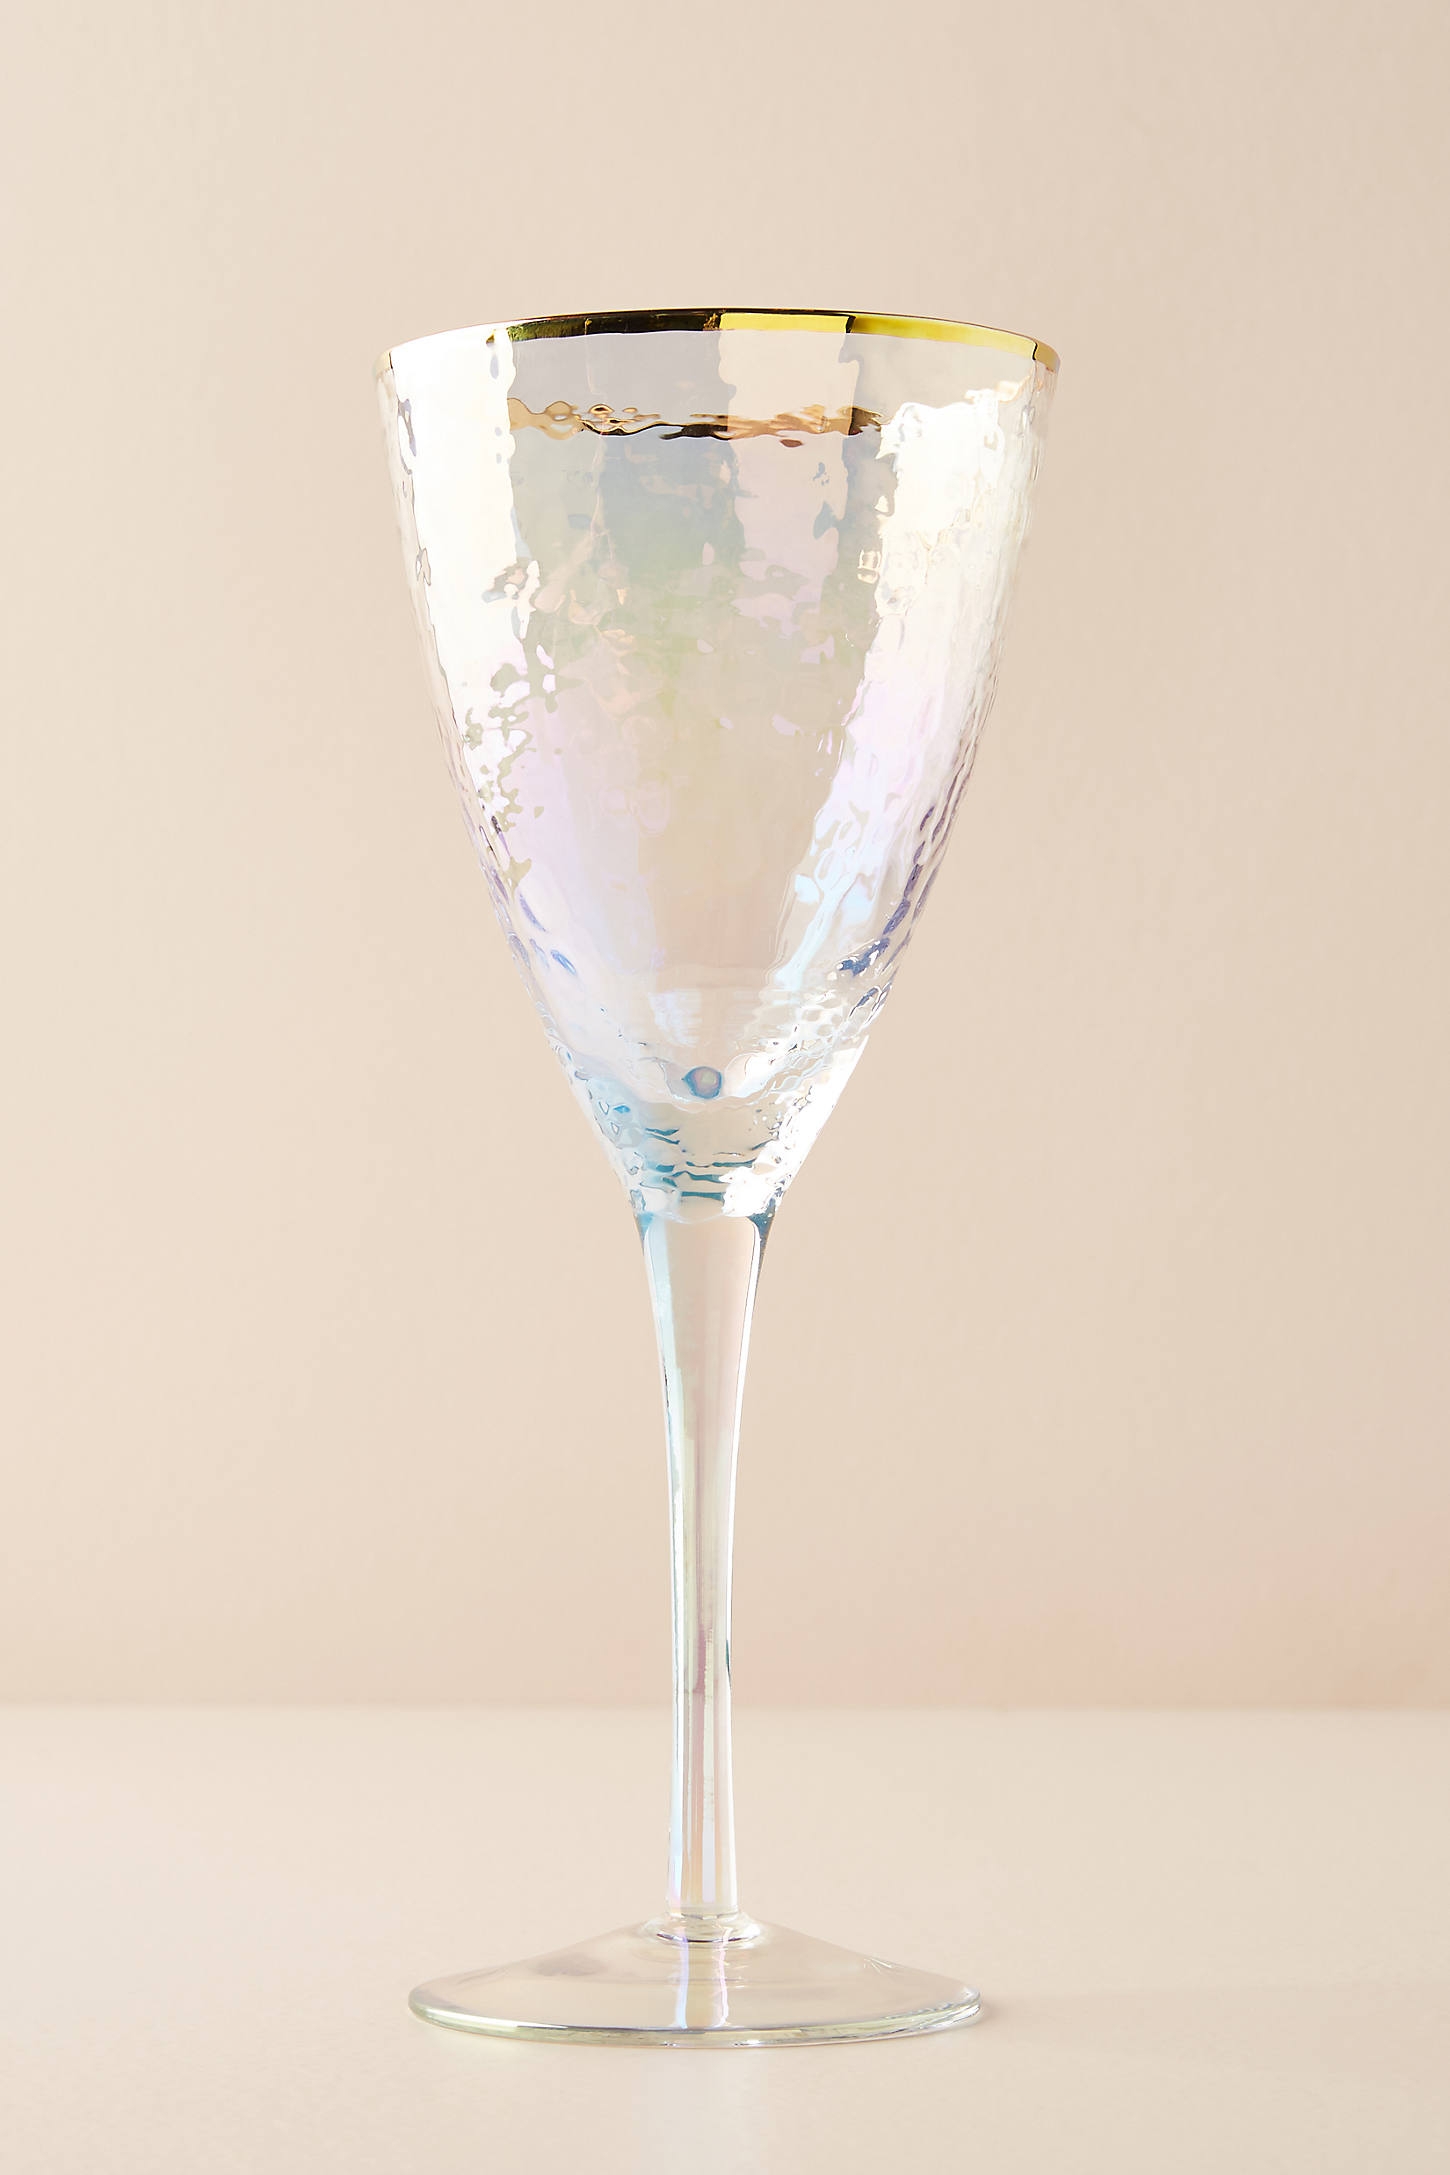 Zaza Lustered Wine Glasses, Set of 4 - Image 0